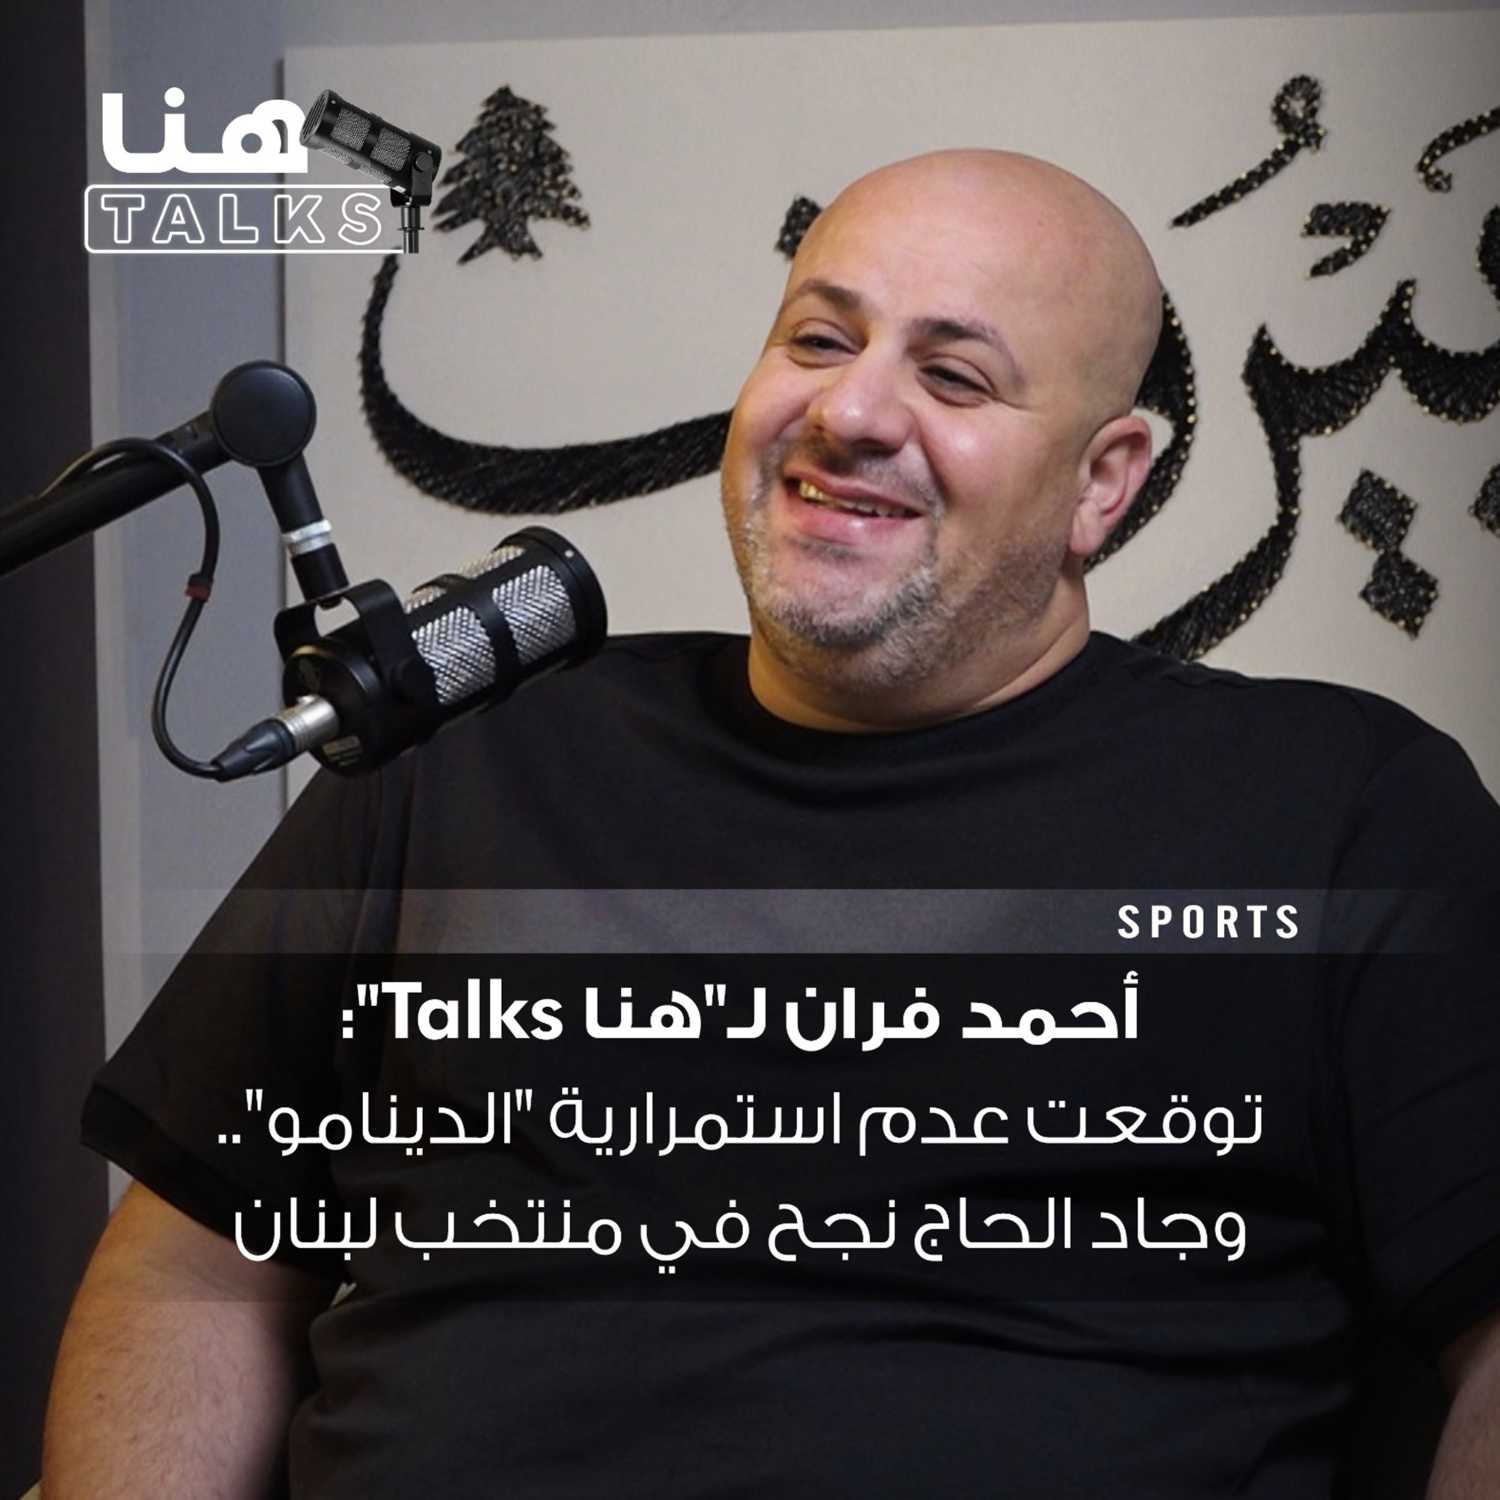 أحمد فران لـ"هنا Talks": توقعت عدم استمرارية "الدينامو".. وجاد الحاج نجح في منتخب لبنان